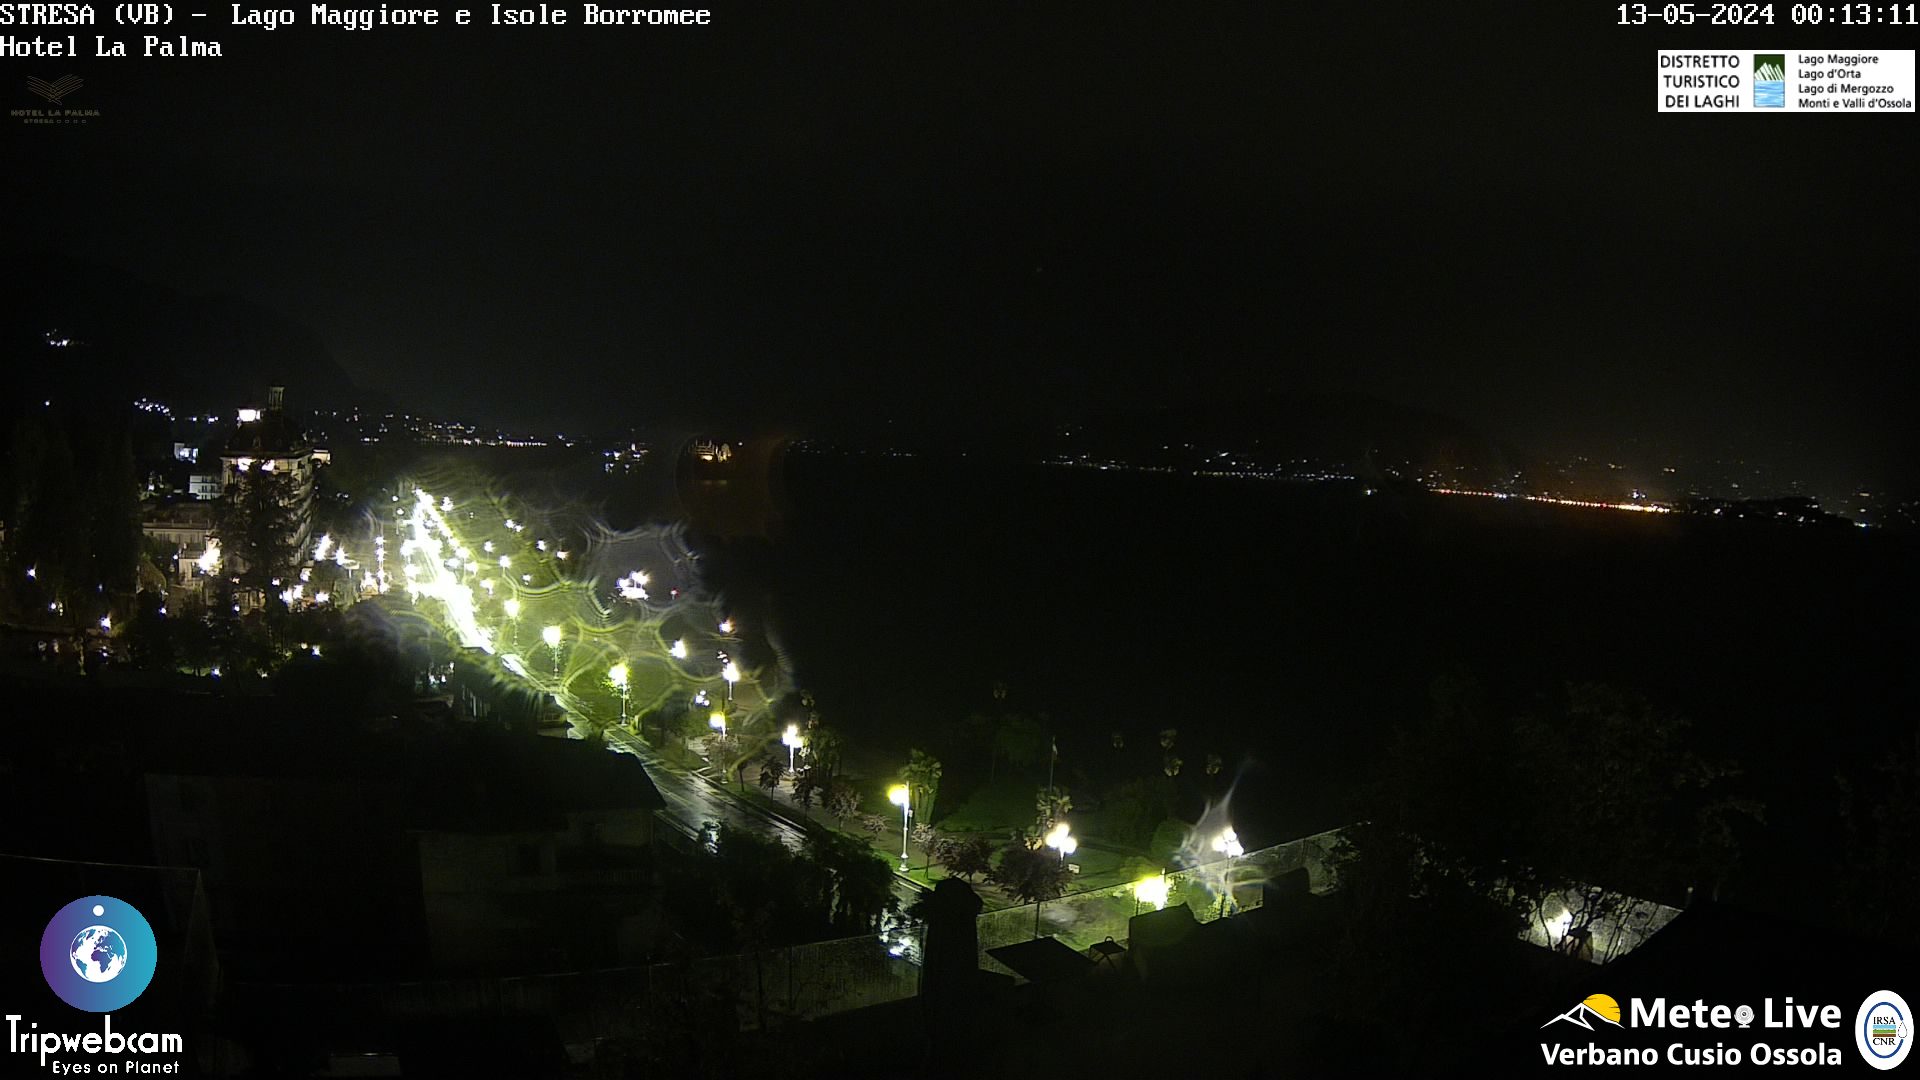 Stresa (Lago Maggiore) Fre. 01:17